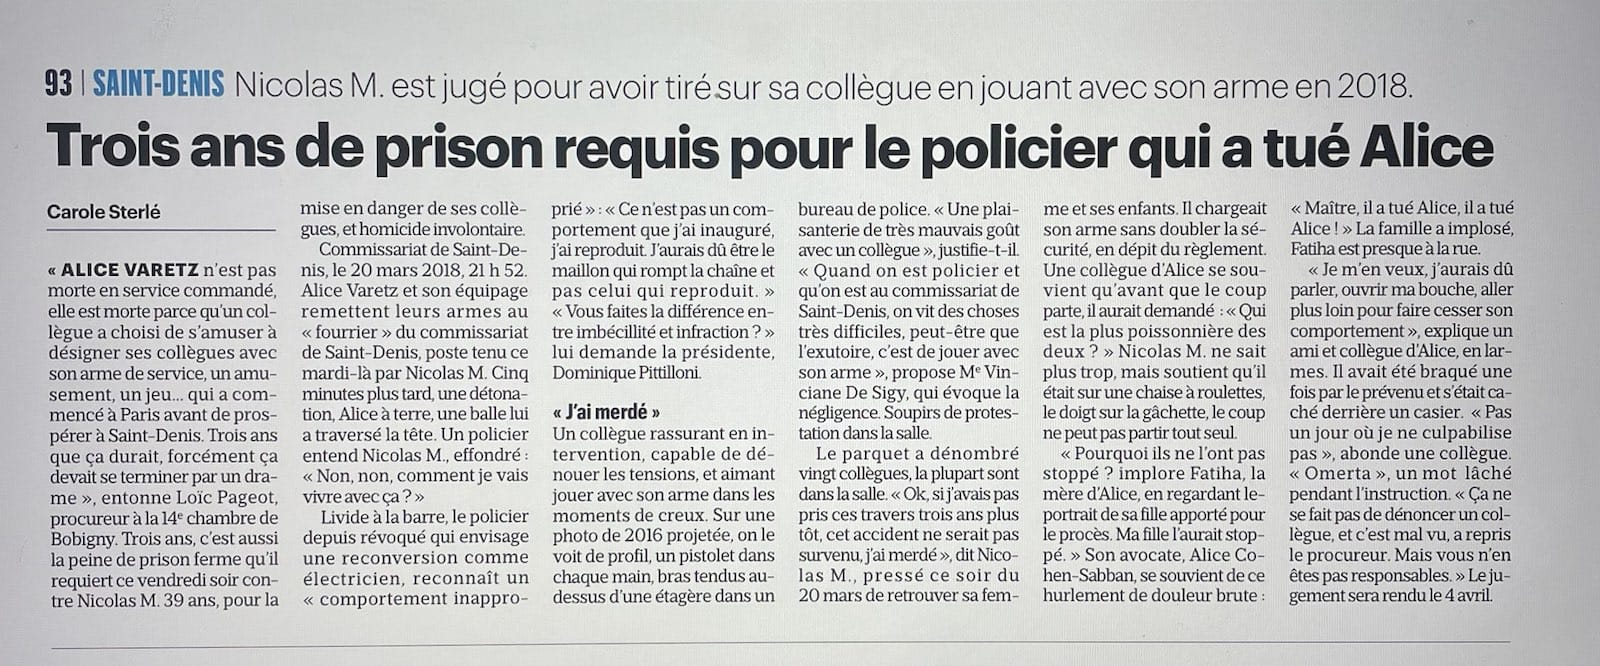 Article Le Parisien Police arme prison